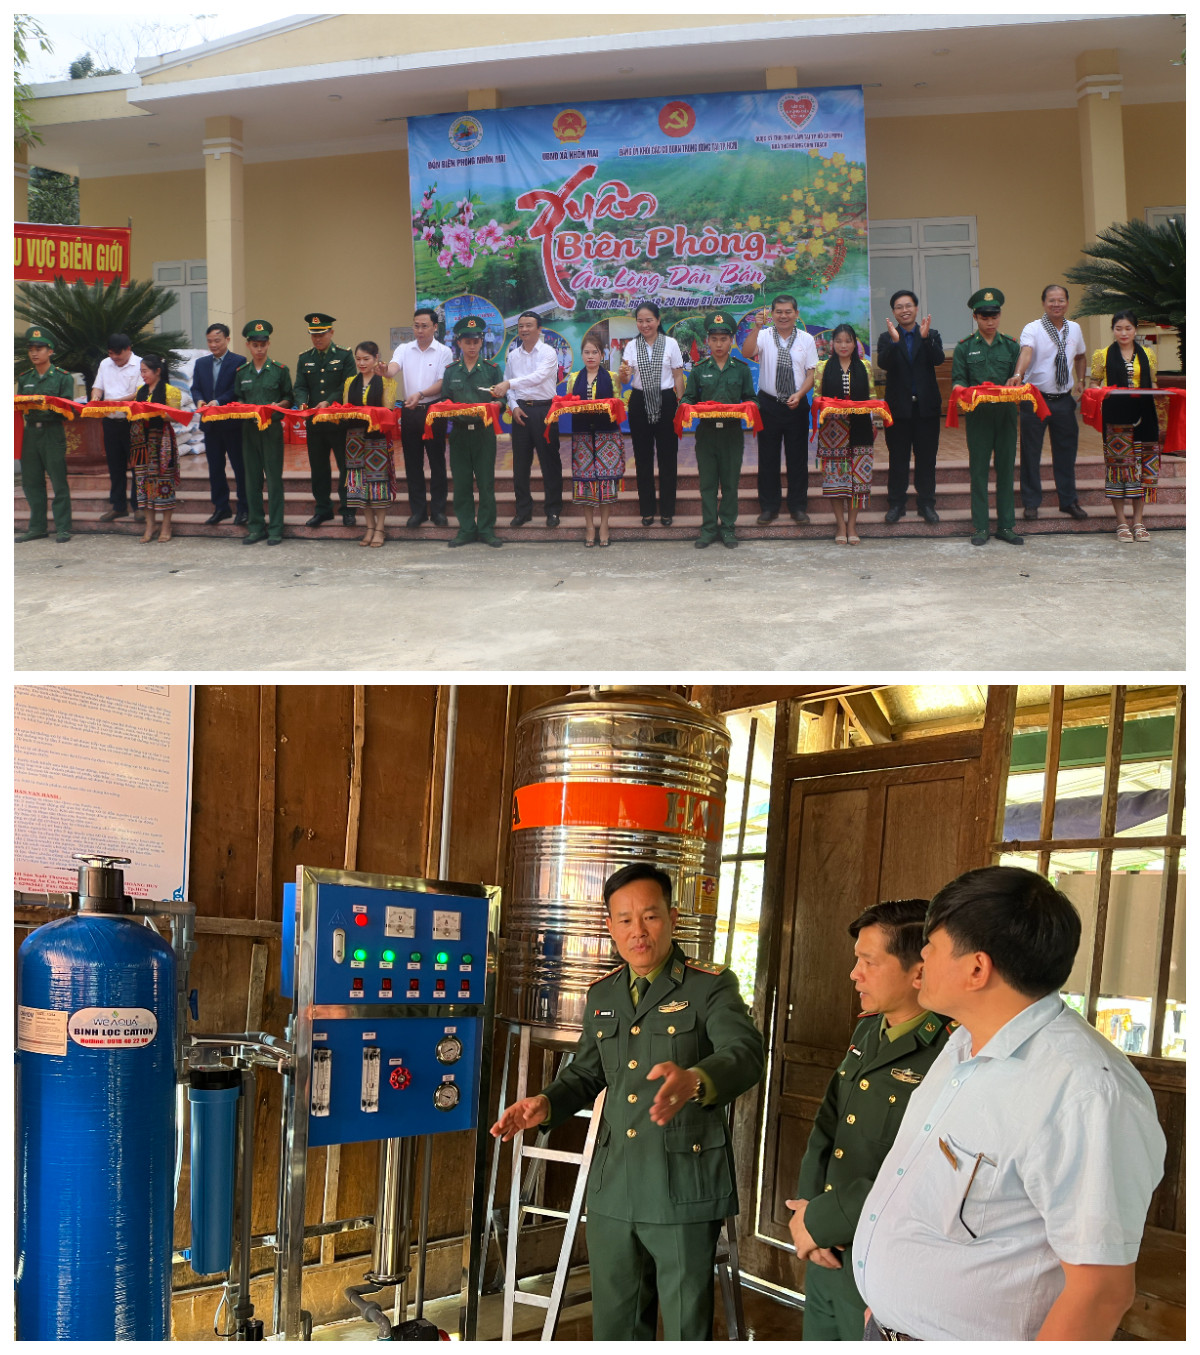 Đảng ủy khối các cơ quan Trung ương tại thành phố Hồ Chí Minh đã trao  tặng 02 hệ thống lọc nước RO trị giá 160 triệu đồng  cho Trường PTTHCS Bán trú Mai Sơn và Đồn Biên phòng xã Nhôn Mai. Ảnh: Khánh Ly.